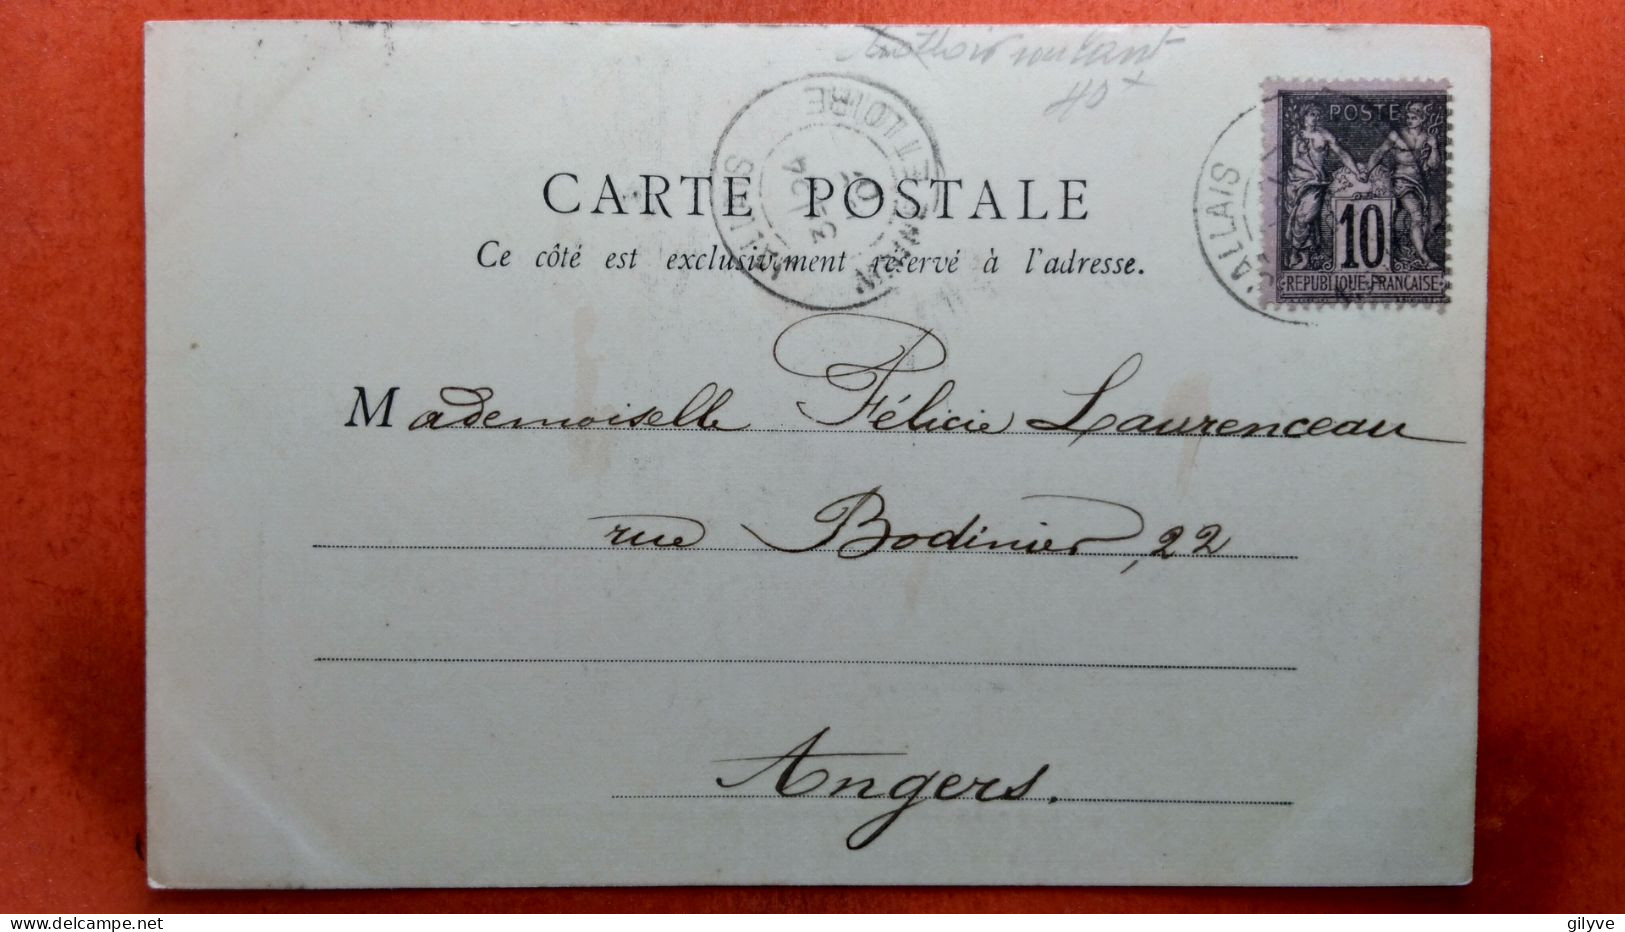 CPA (75) Exposition Universelle De Paris.1900. Le Trottoir Roulant Au Pont Des Invalides.  (7A.562) - Ausstellungen